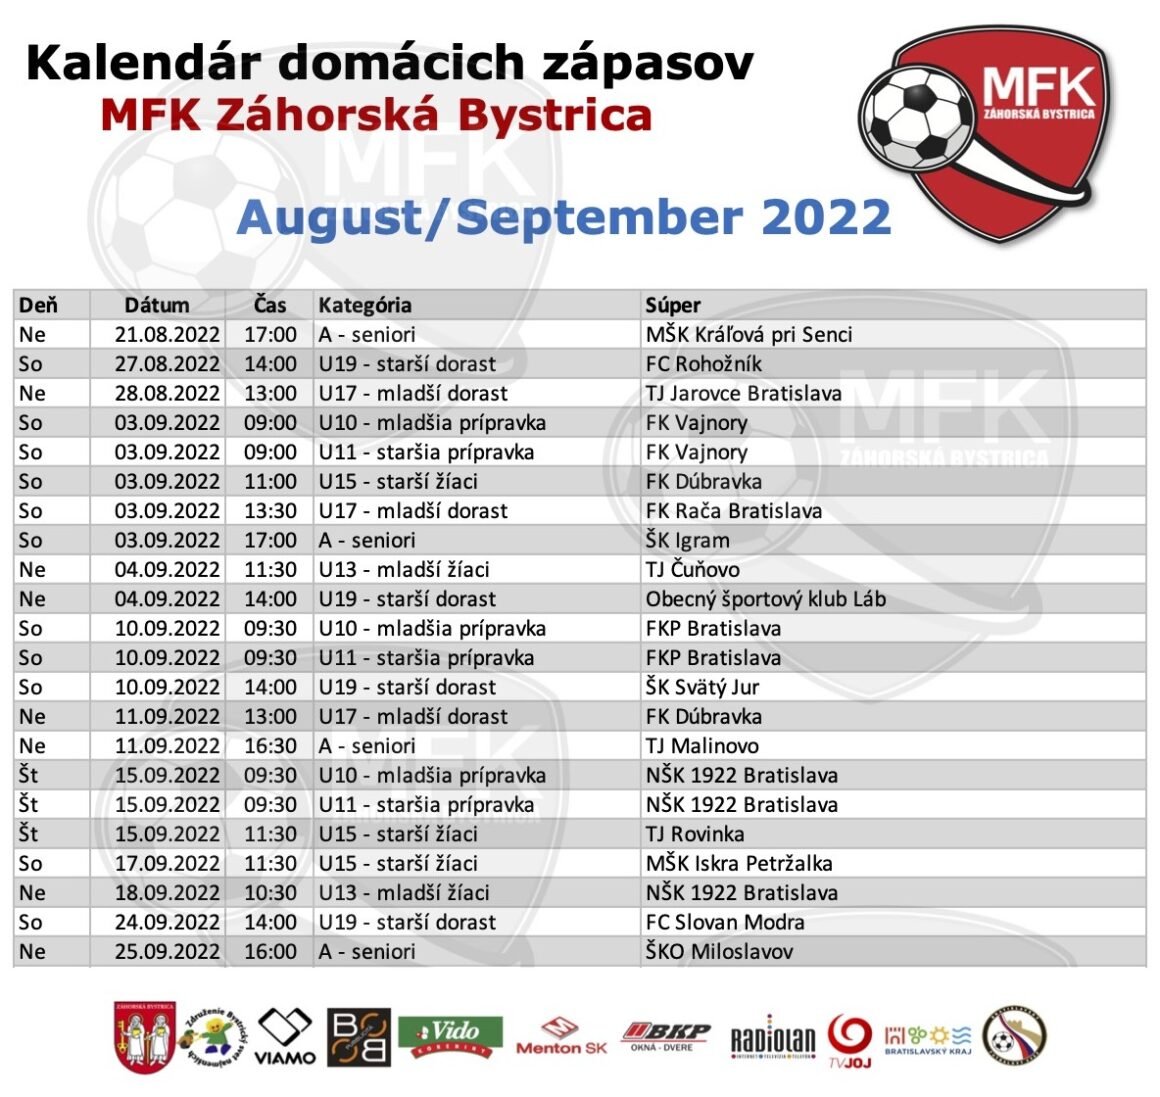 Kalendár domácich zápasov futbalistov MFK Záhorská Bystrica